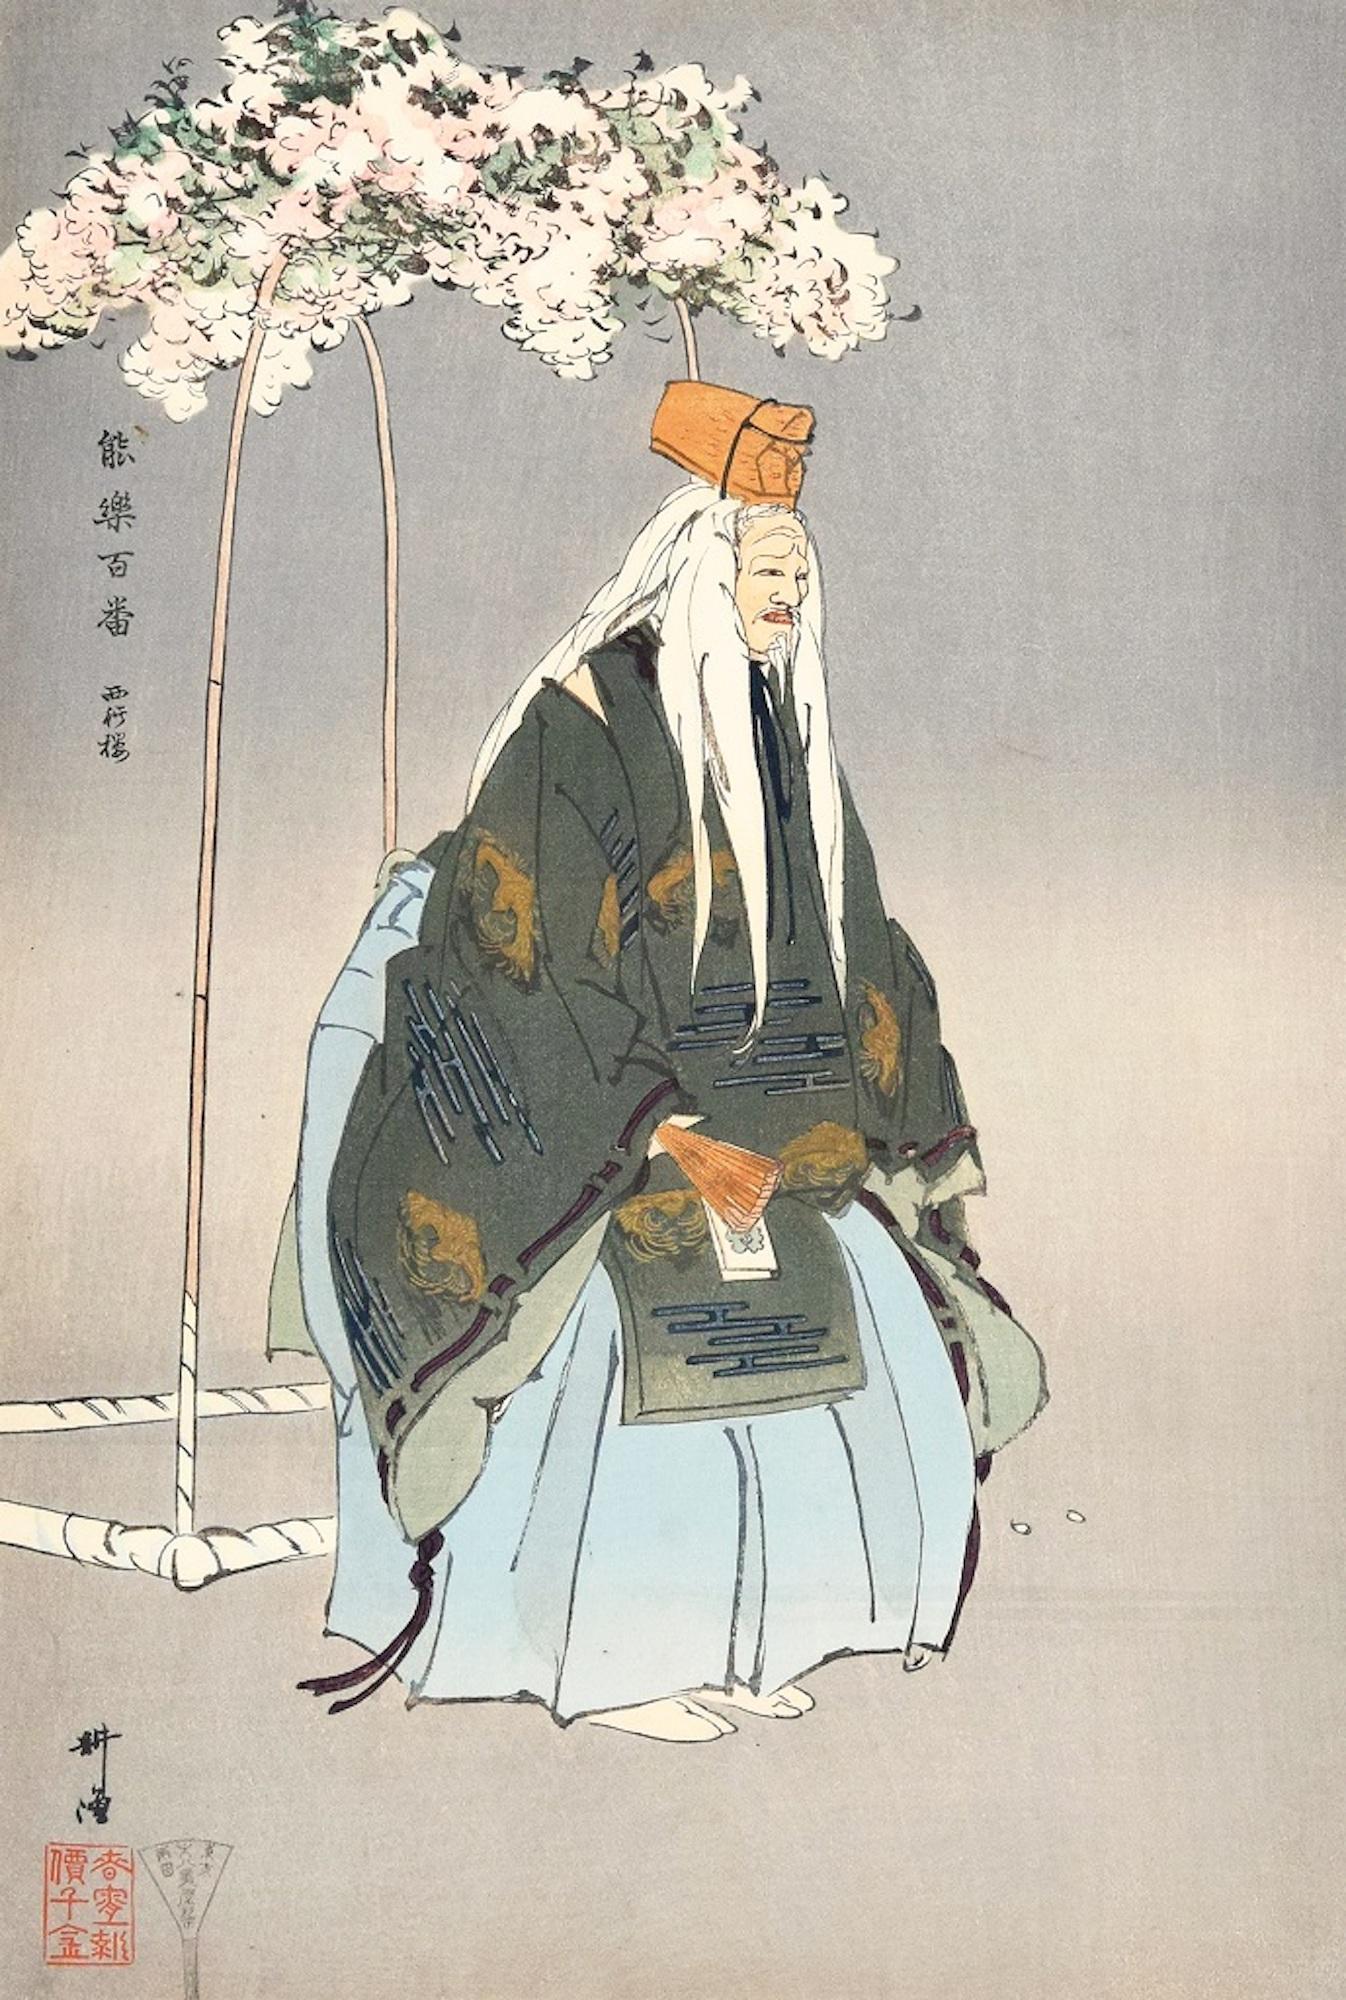 Saigyo-Zakura - Original Woodcut Print by Tsukioka Kôgyo - 1925